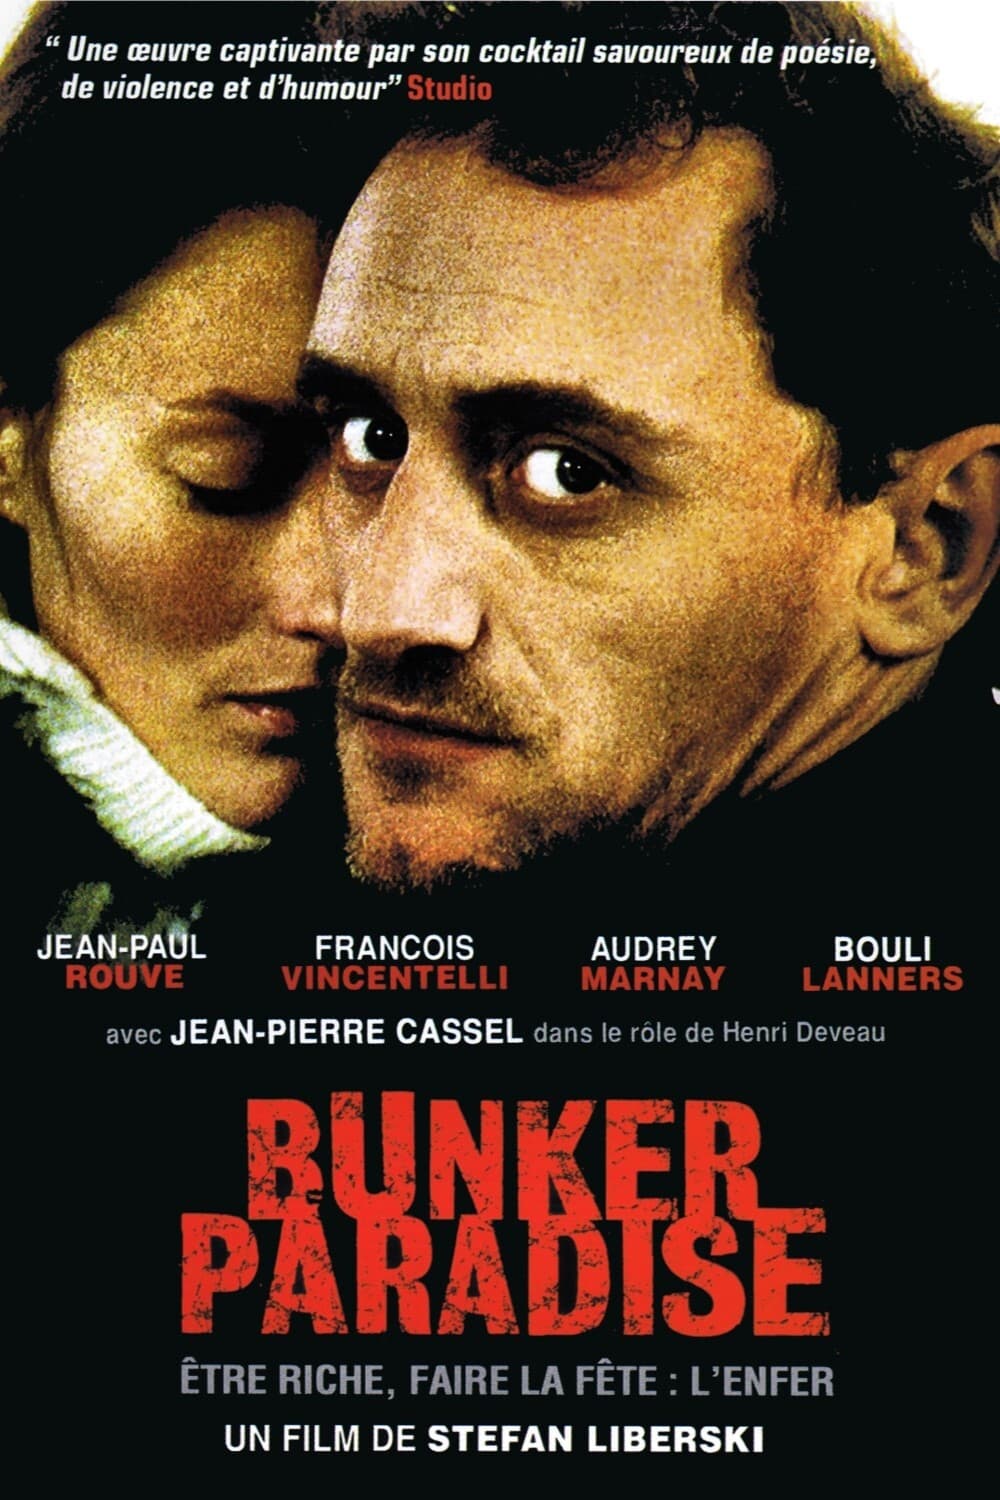 Bunker Paradise (2006)